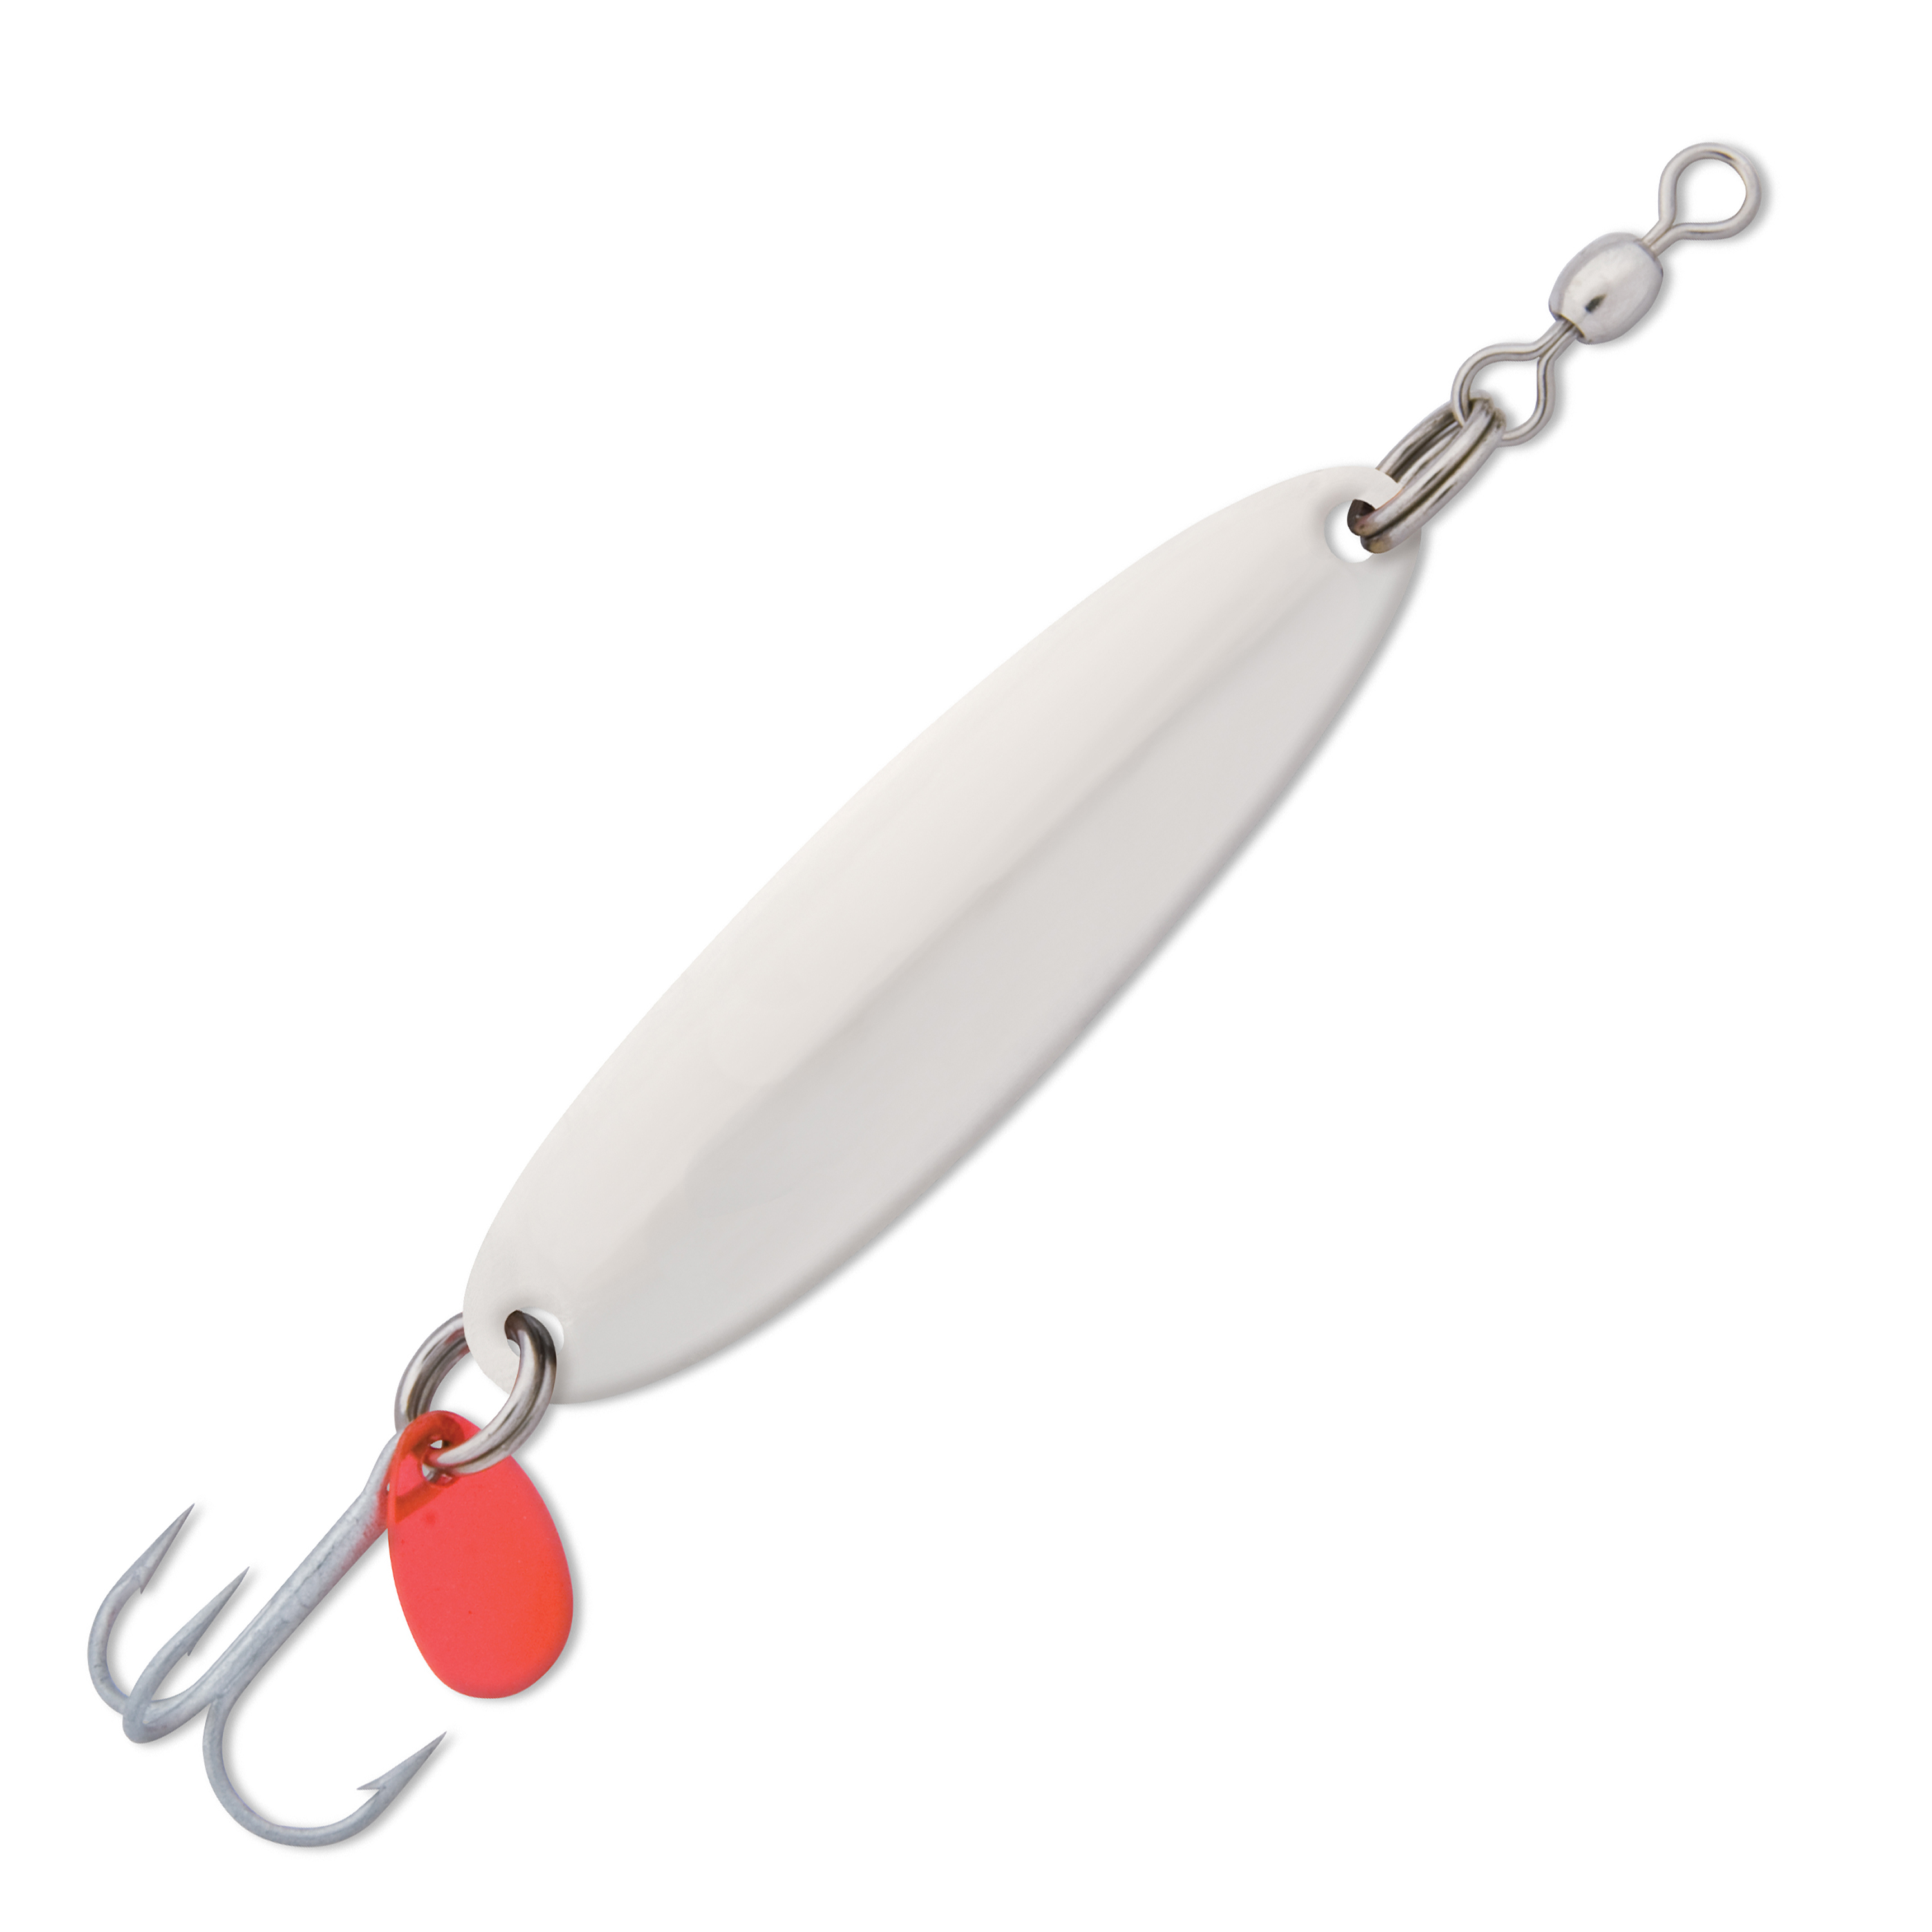 Spoon) Super Duper Luhr Jensen Trout Fishing Top 5 Best Lure Color